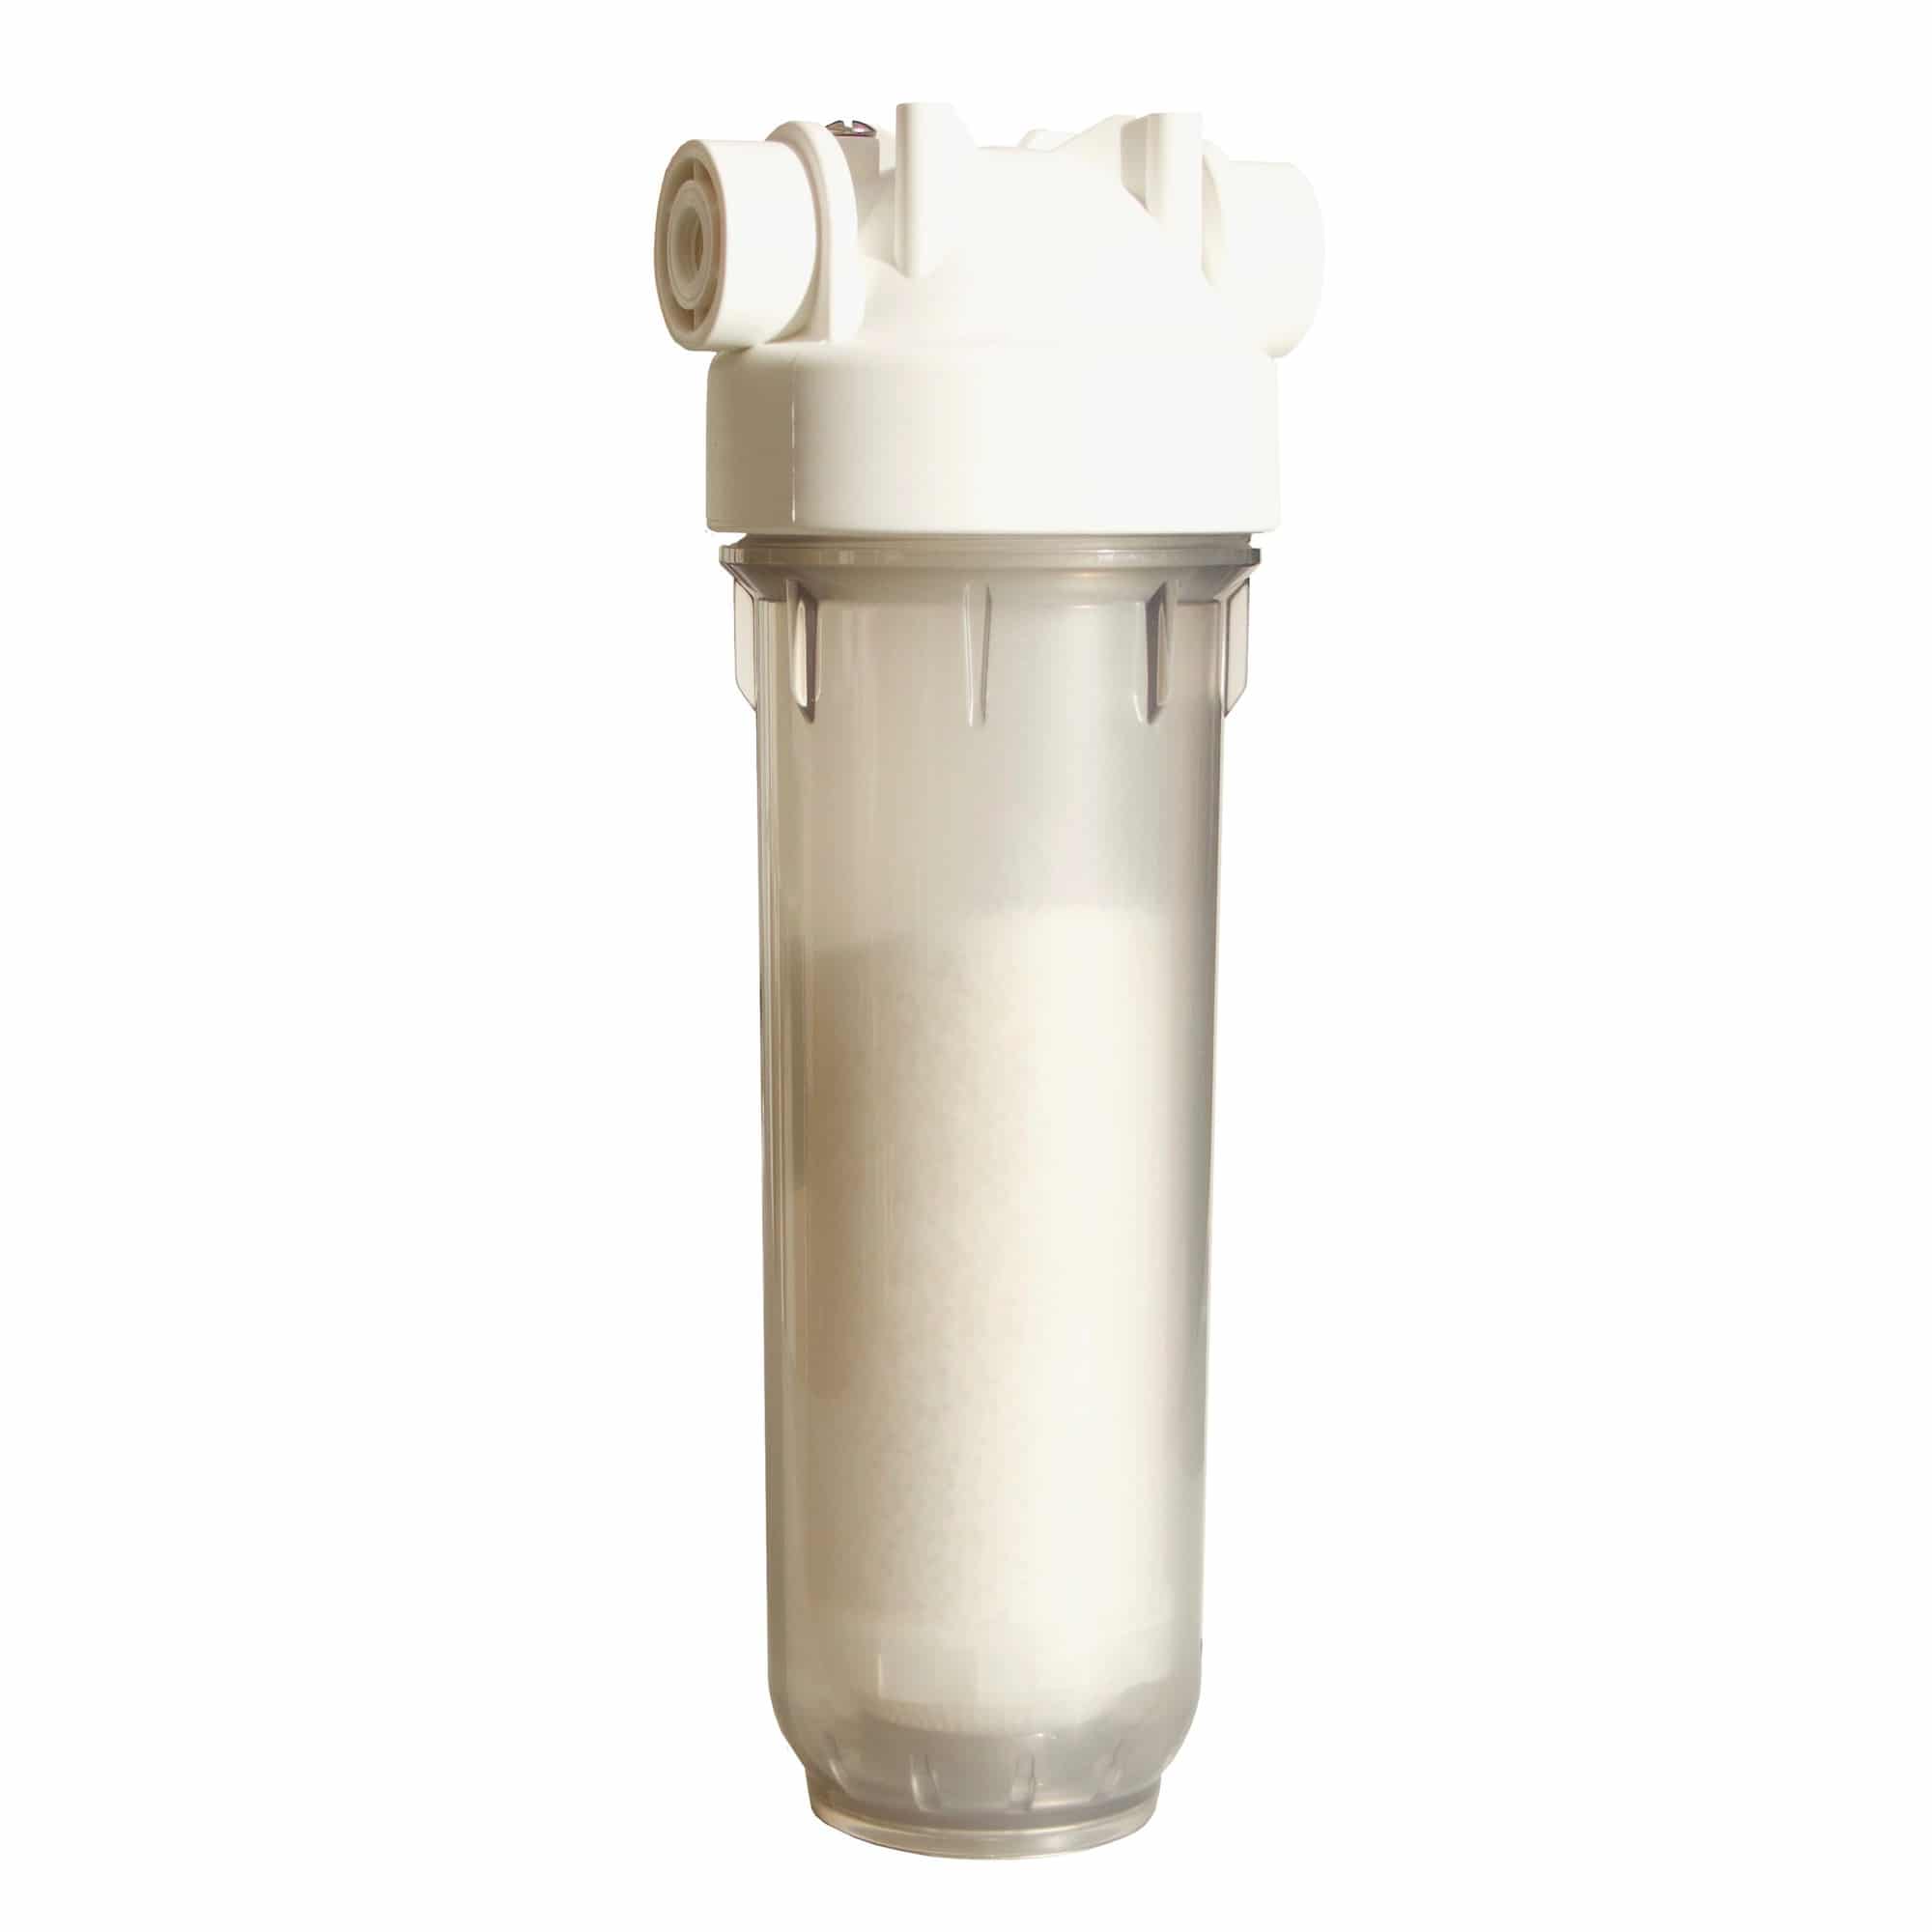 Леруа фильтры очистки воды. Фильтр умягчитель для воды DME GW-541 1/2. Магистральные фильтры Аква м. Сетчатый фильтр для смягчения воды egua. Магистральный фильтр Леруа.